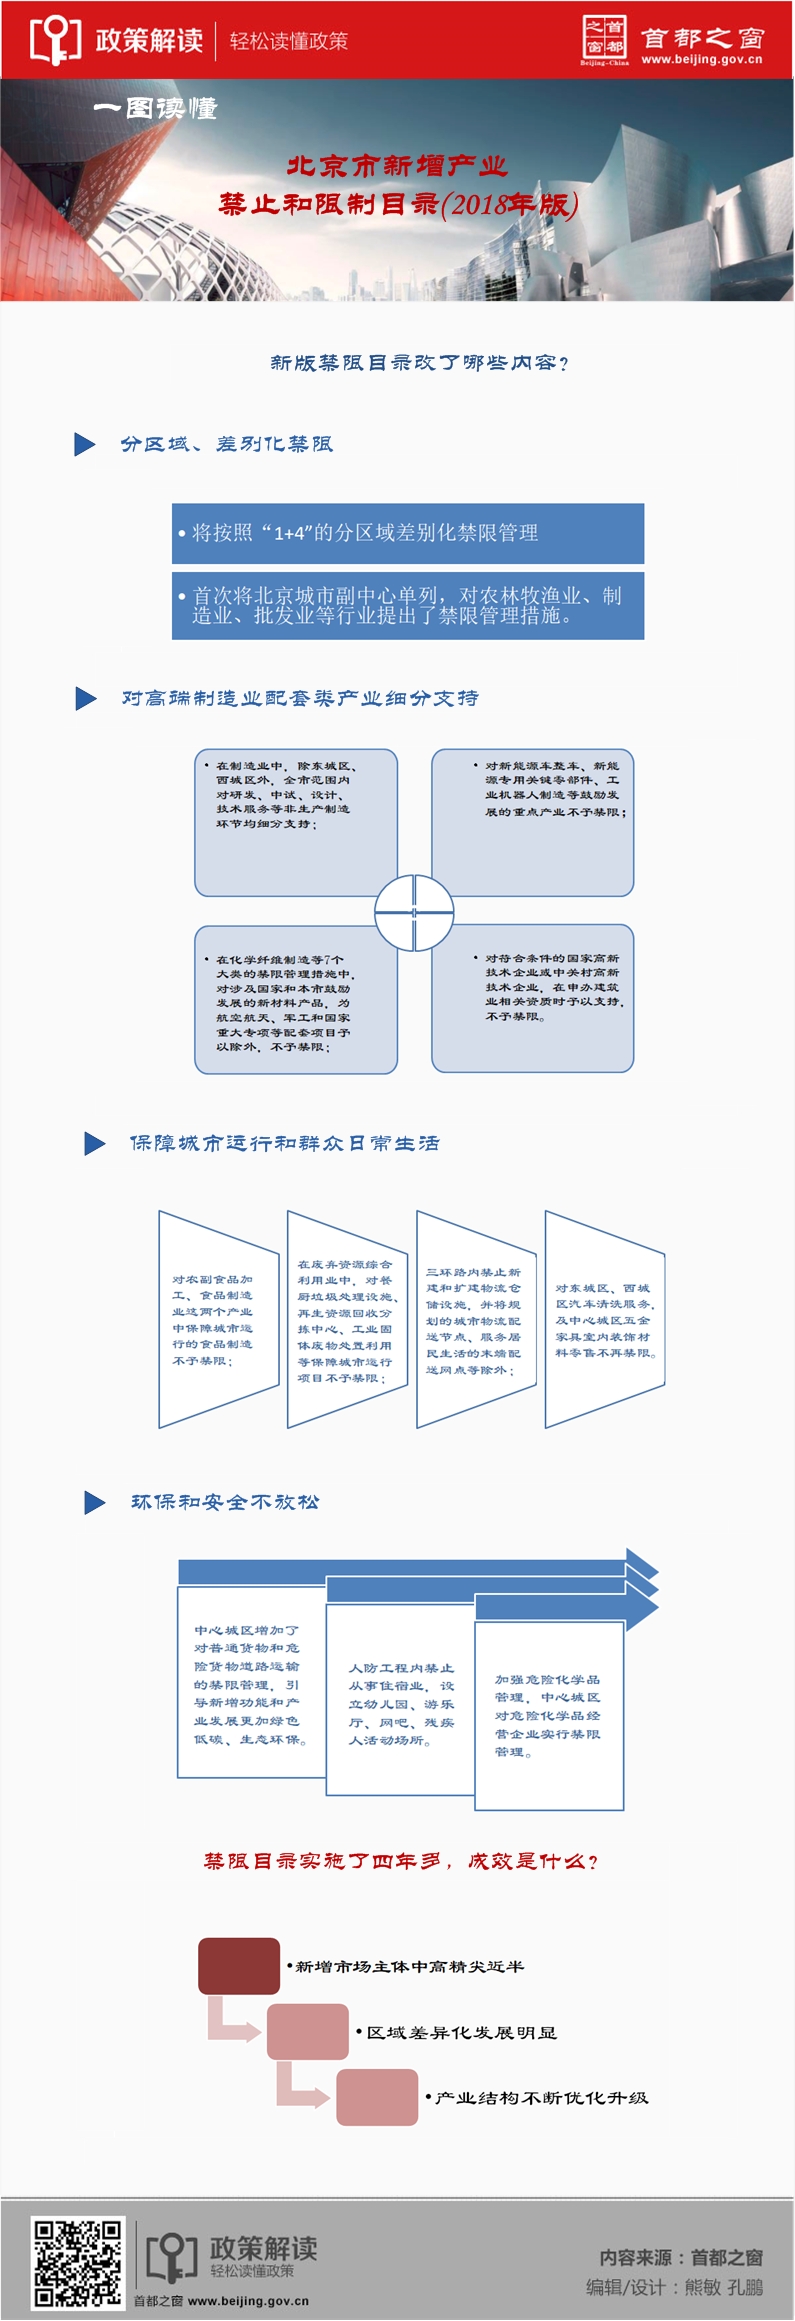 北京市新增产业的禁止和限制目录(2018年版).jpg